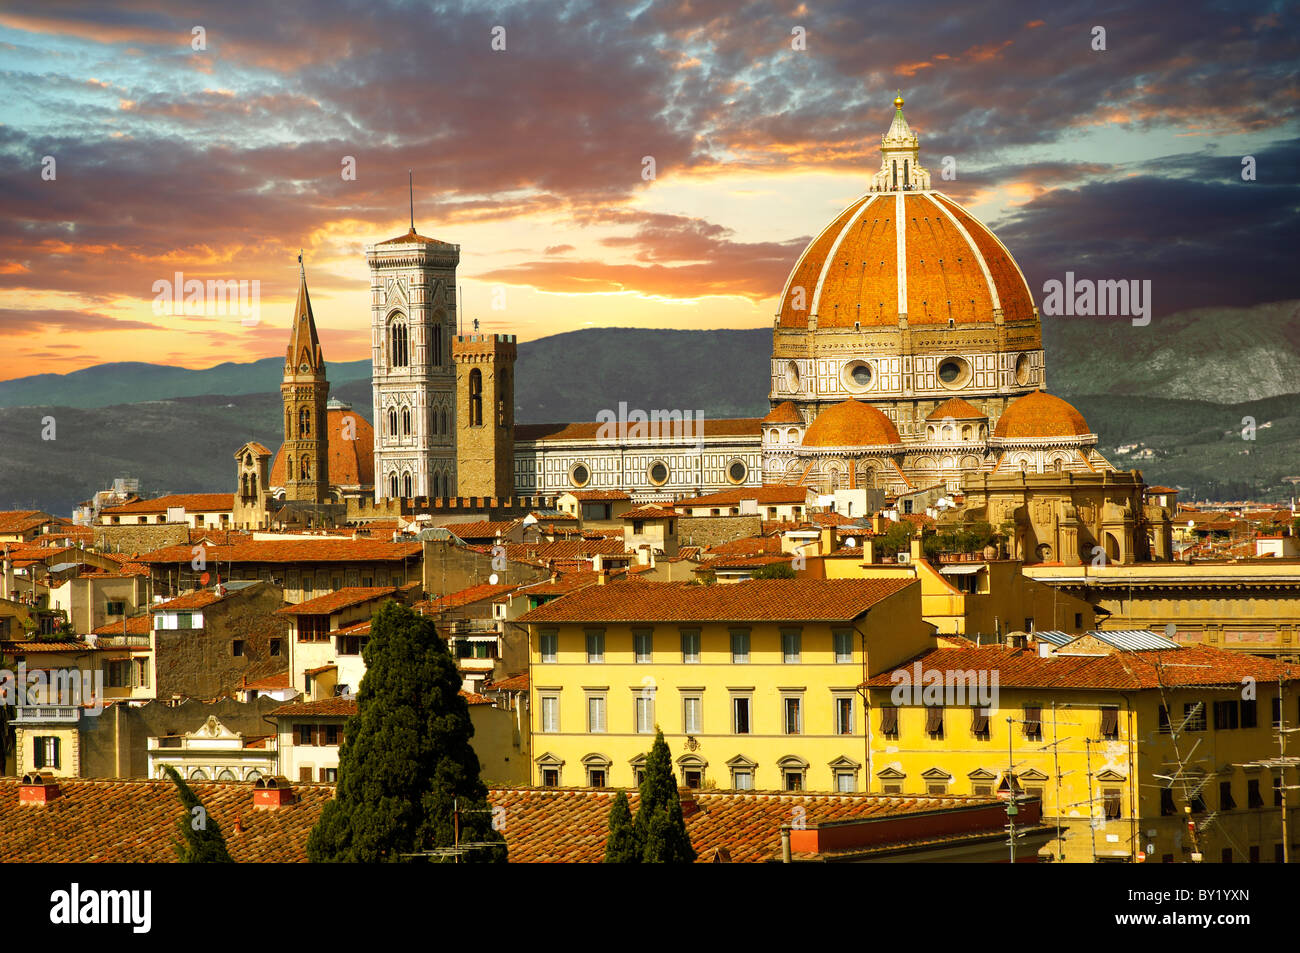 Vista superior del techo de la torre belll y el cimborrio de la Catedral de Florencia, Italia Foto de stock